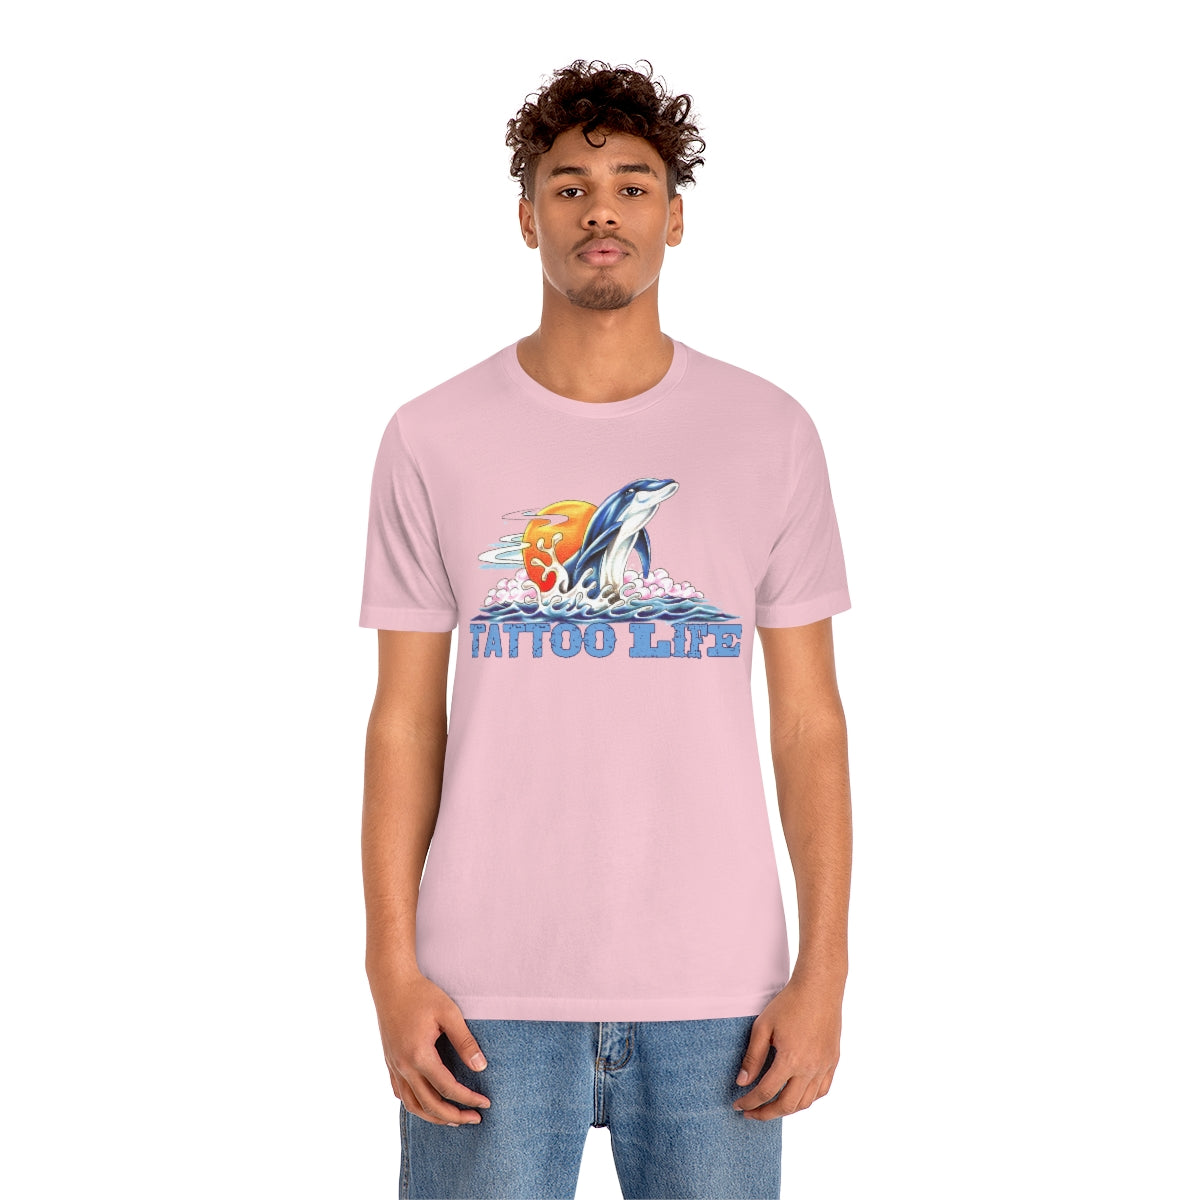 TATTOO LIFE - Dolphin, Surf & Sun Shirt